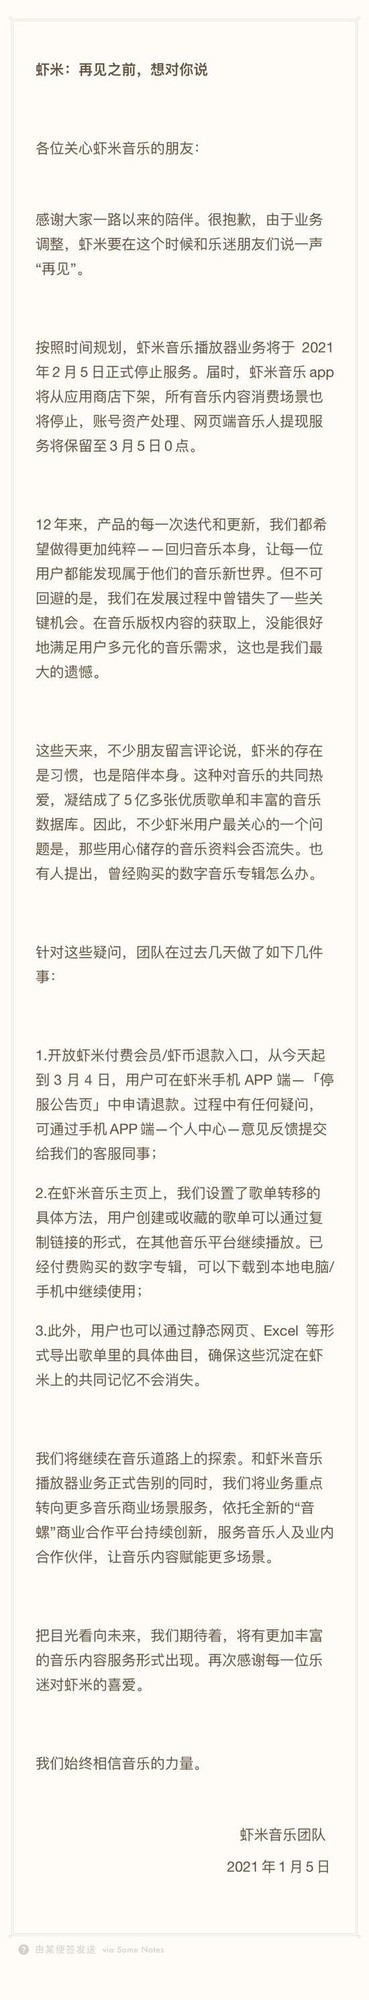 虾米音乐发布告别信,2月5日将停止服务